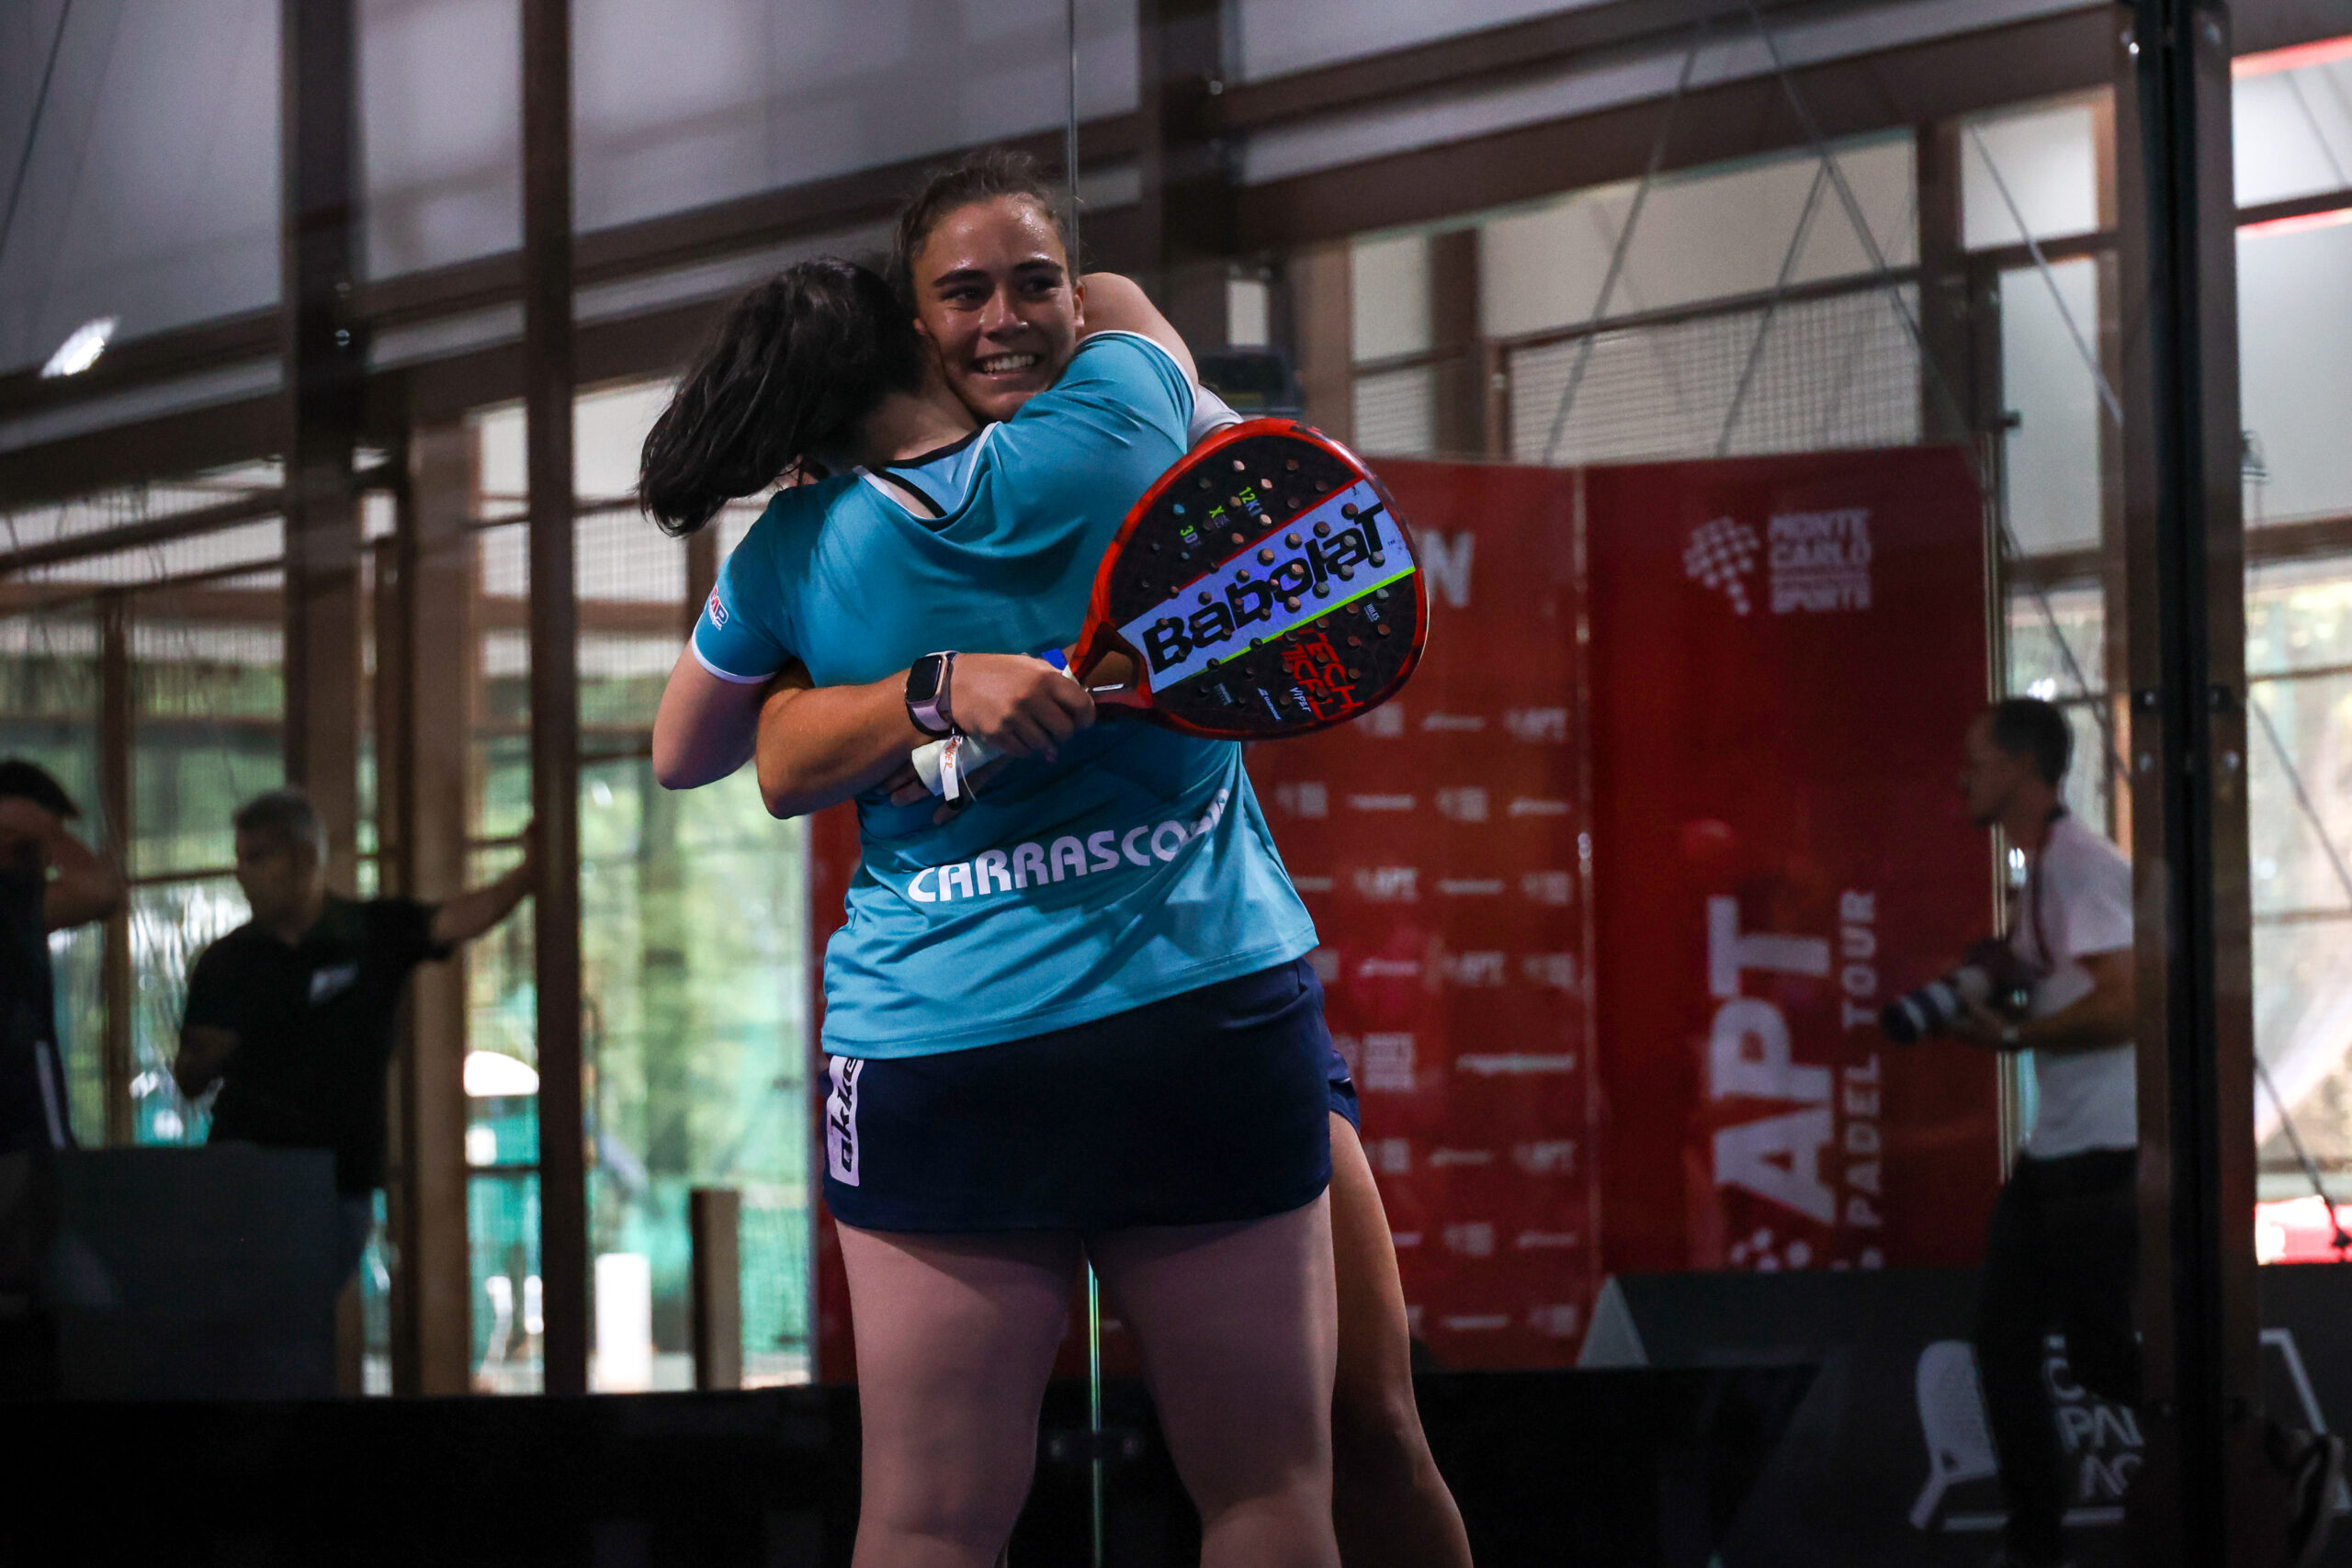 APT Oeiras Open – Carrascosa en Martinez kampioenen